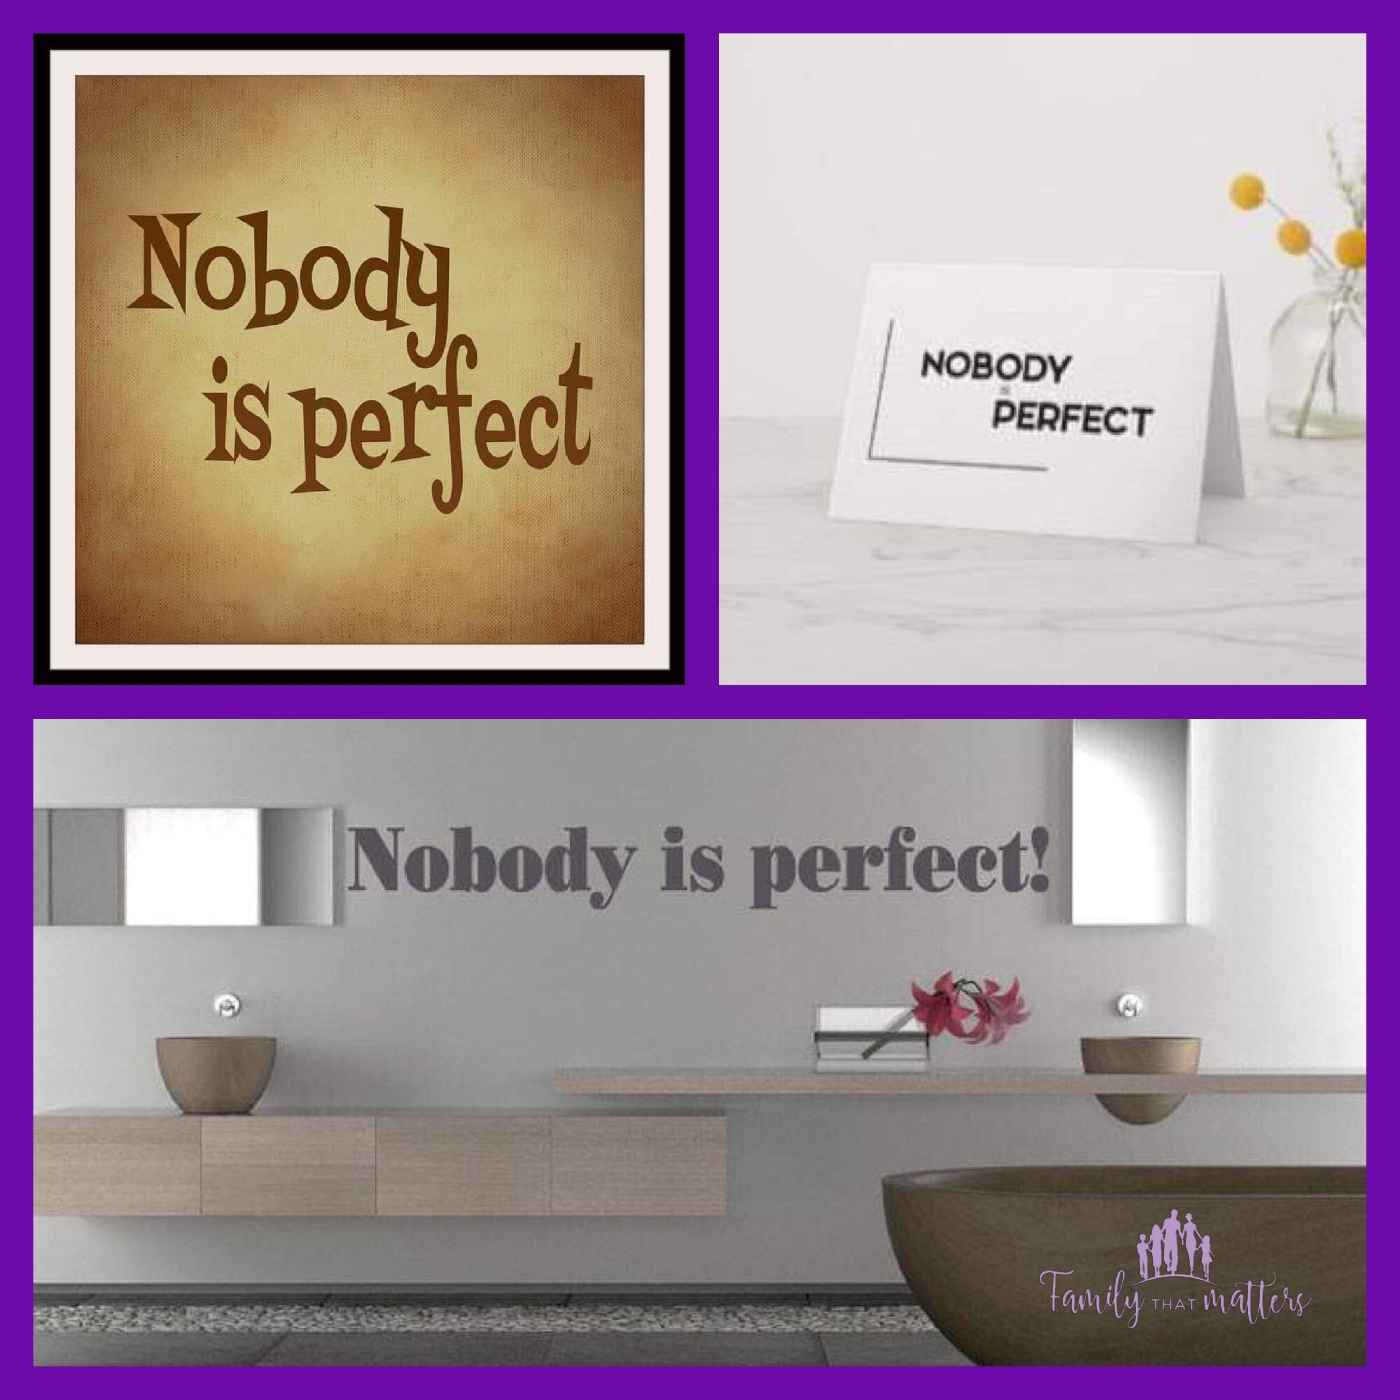 Nadie es perfecto, pero ¿qué pasa con nuestra propia vida?